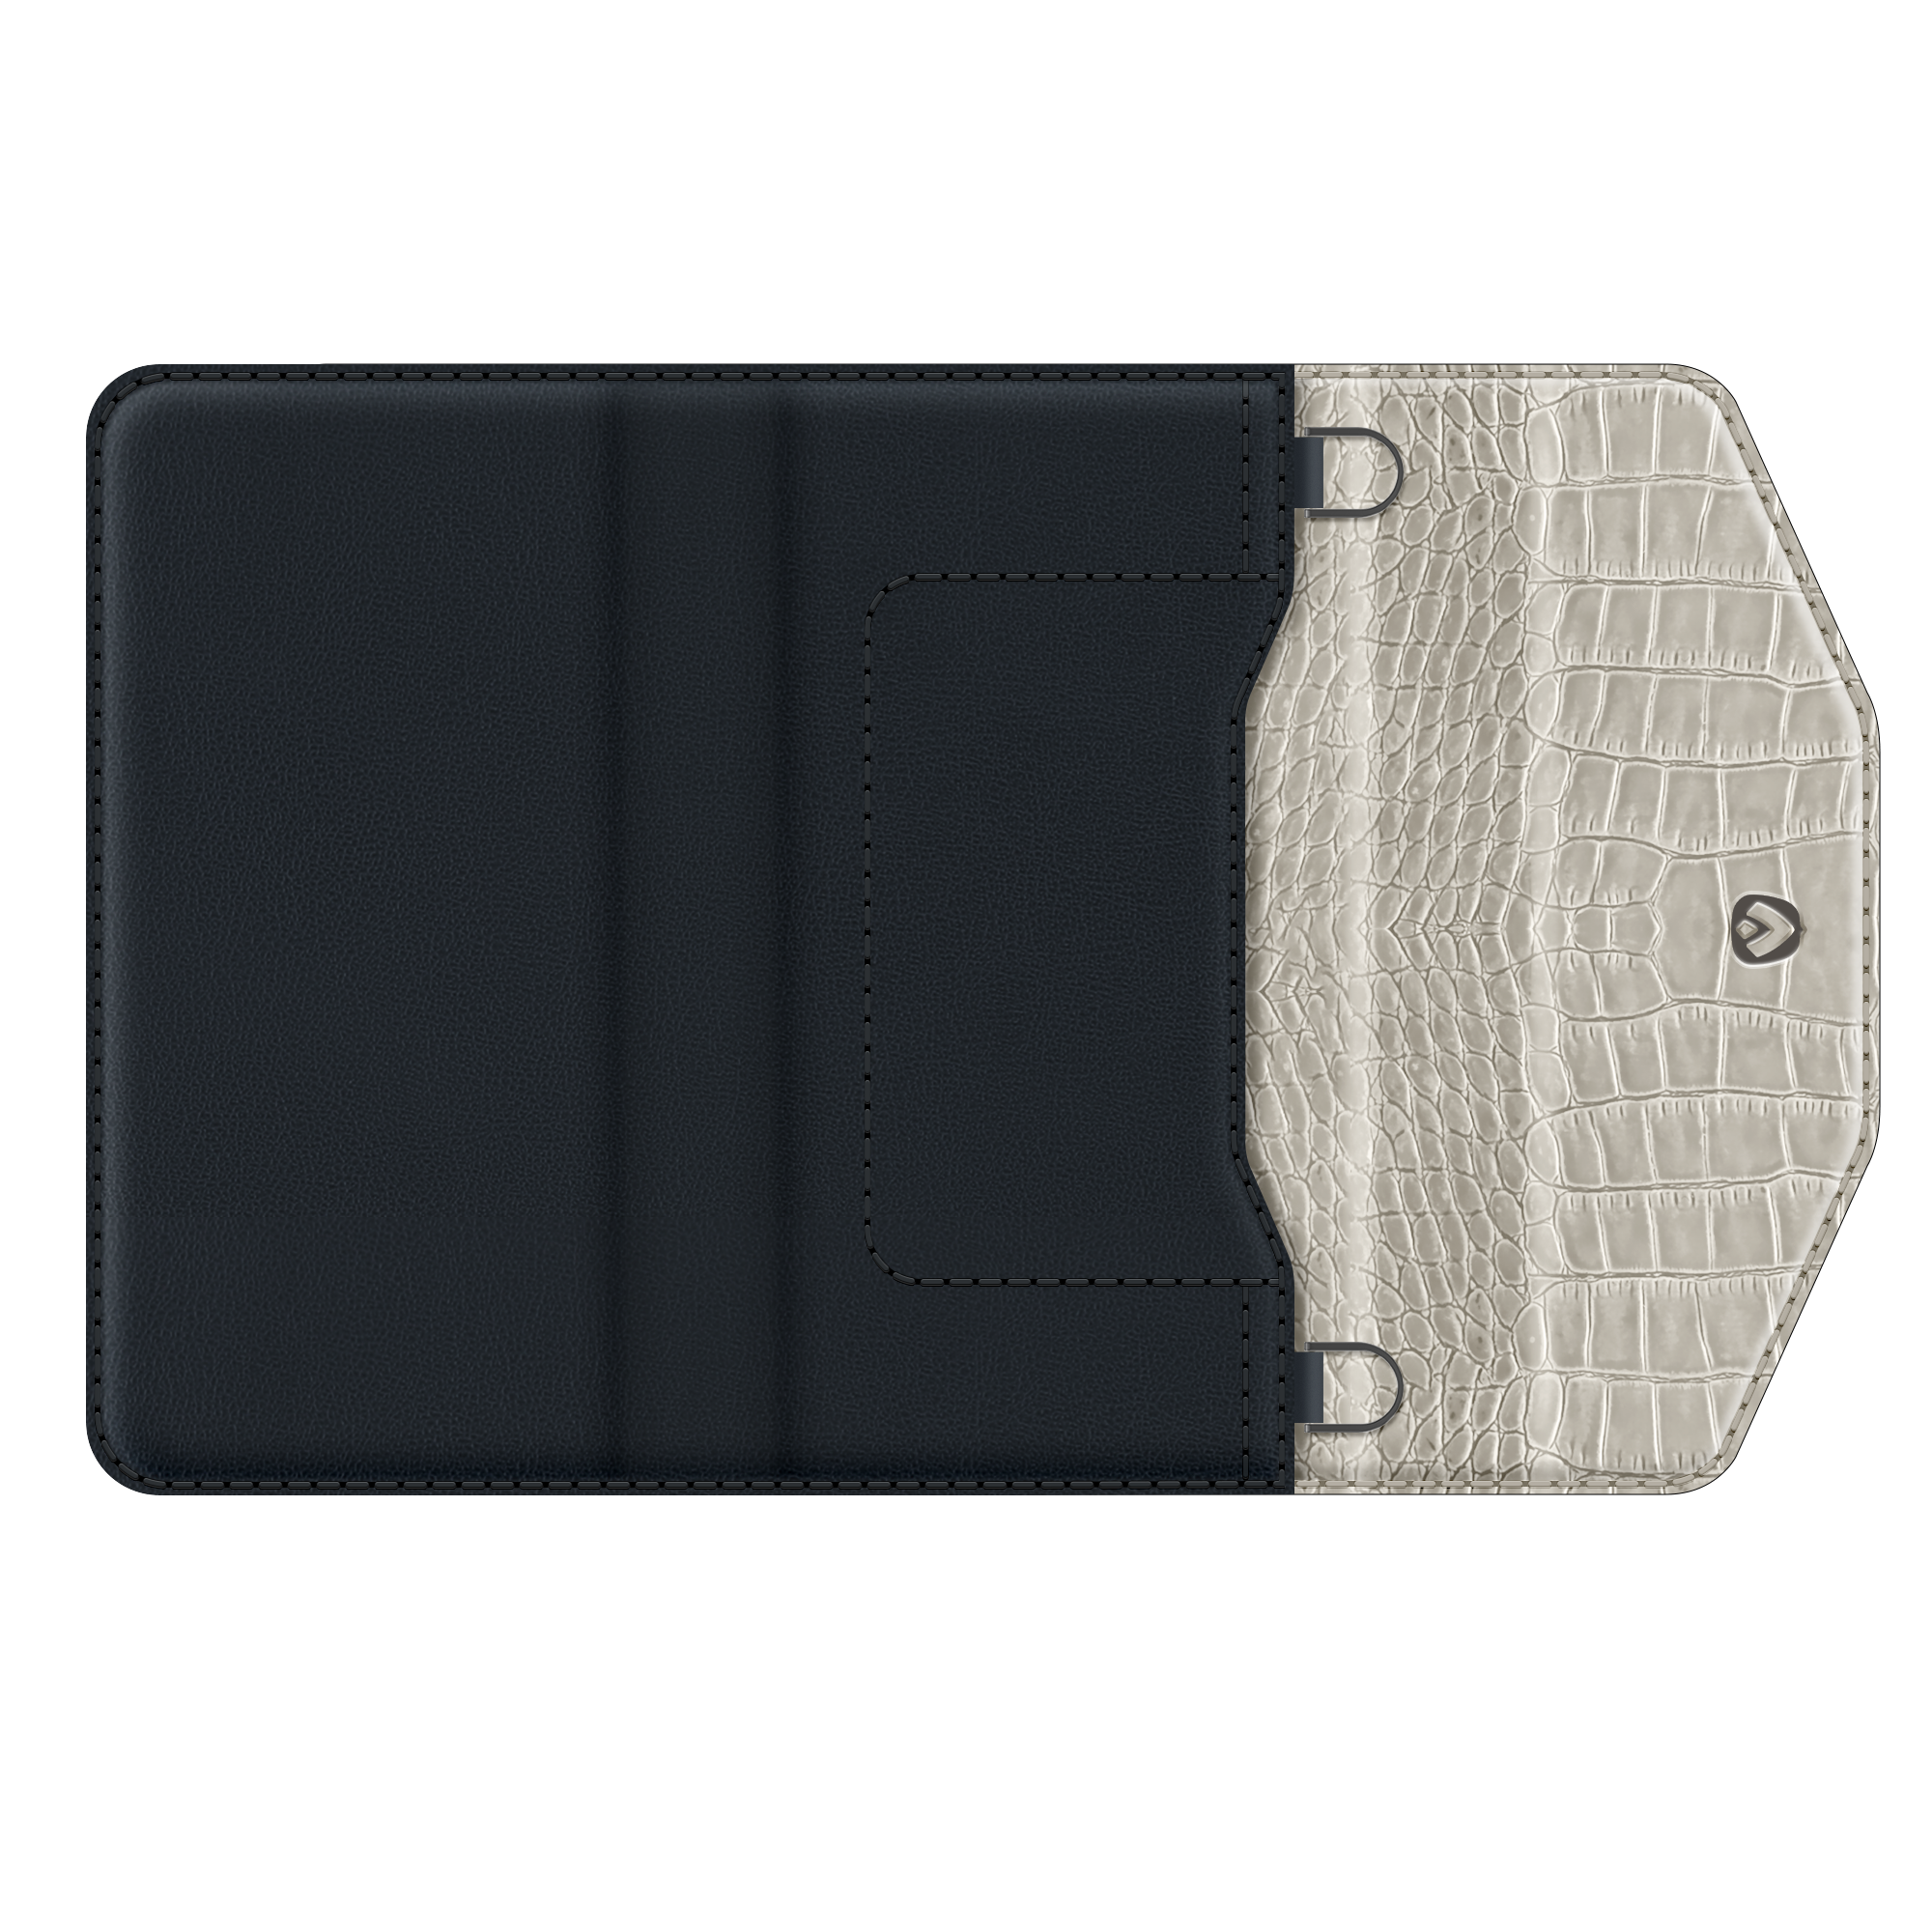 Entfernbare 2-in-1 Luxus Clutch iPhone 12 - 12 Pro Schwarz